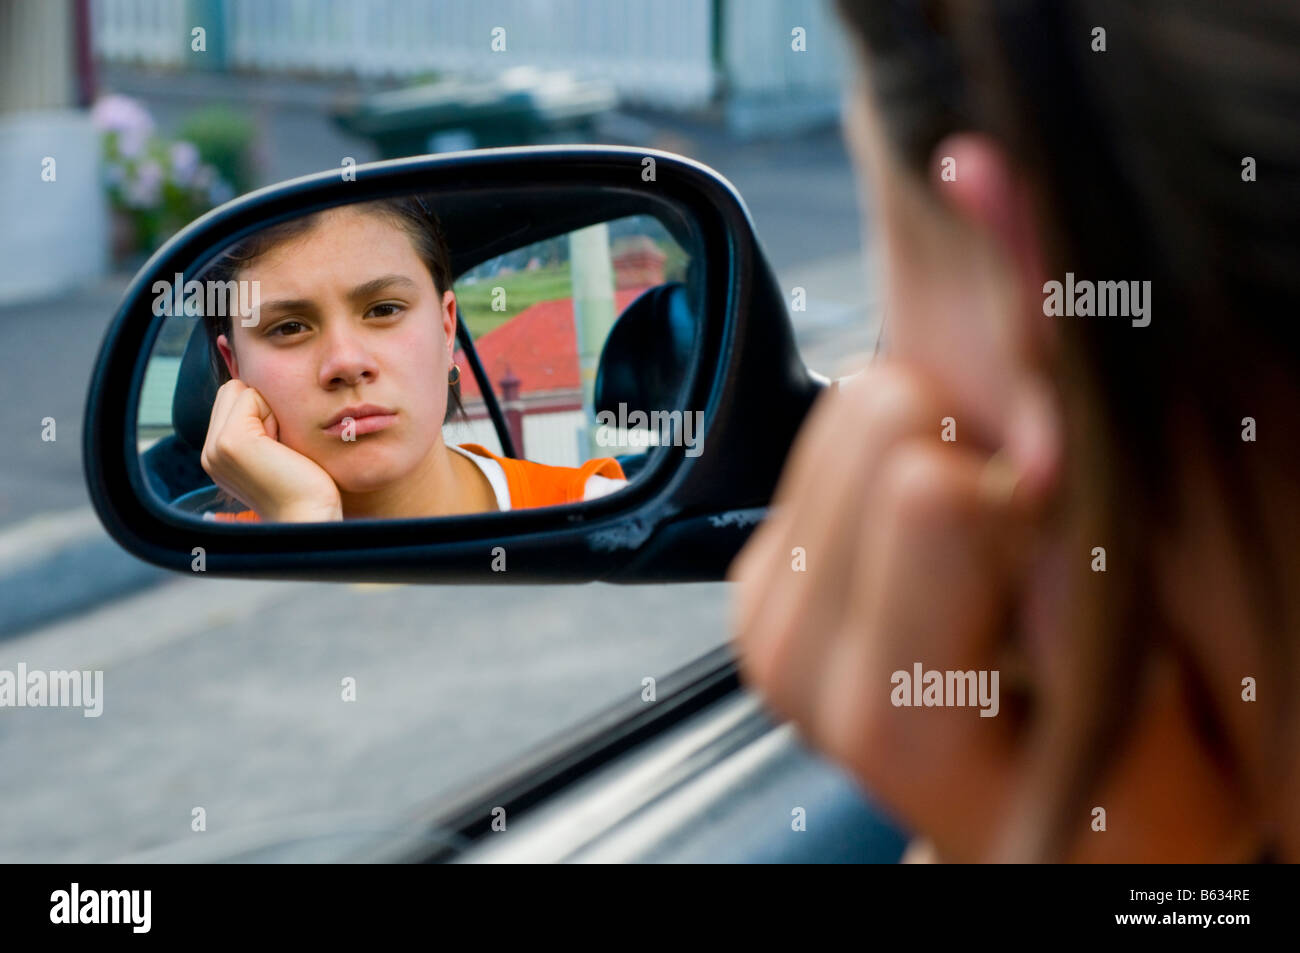 Imbronciato giovane ragazza adolescente a guardare nel retrovisore della macchina Foto Stock